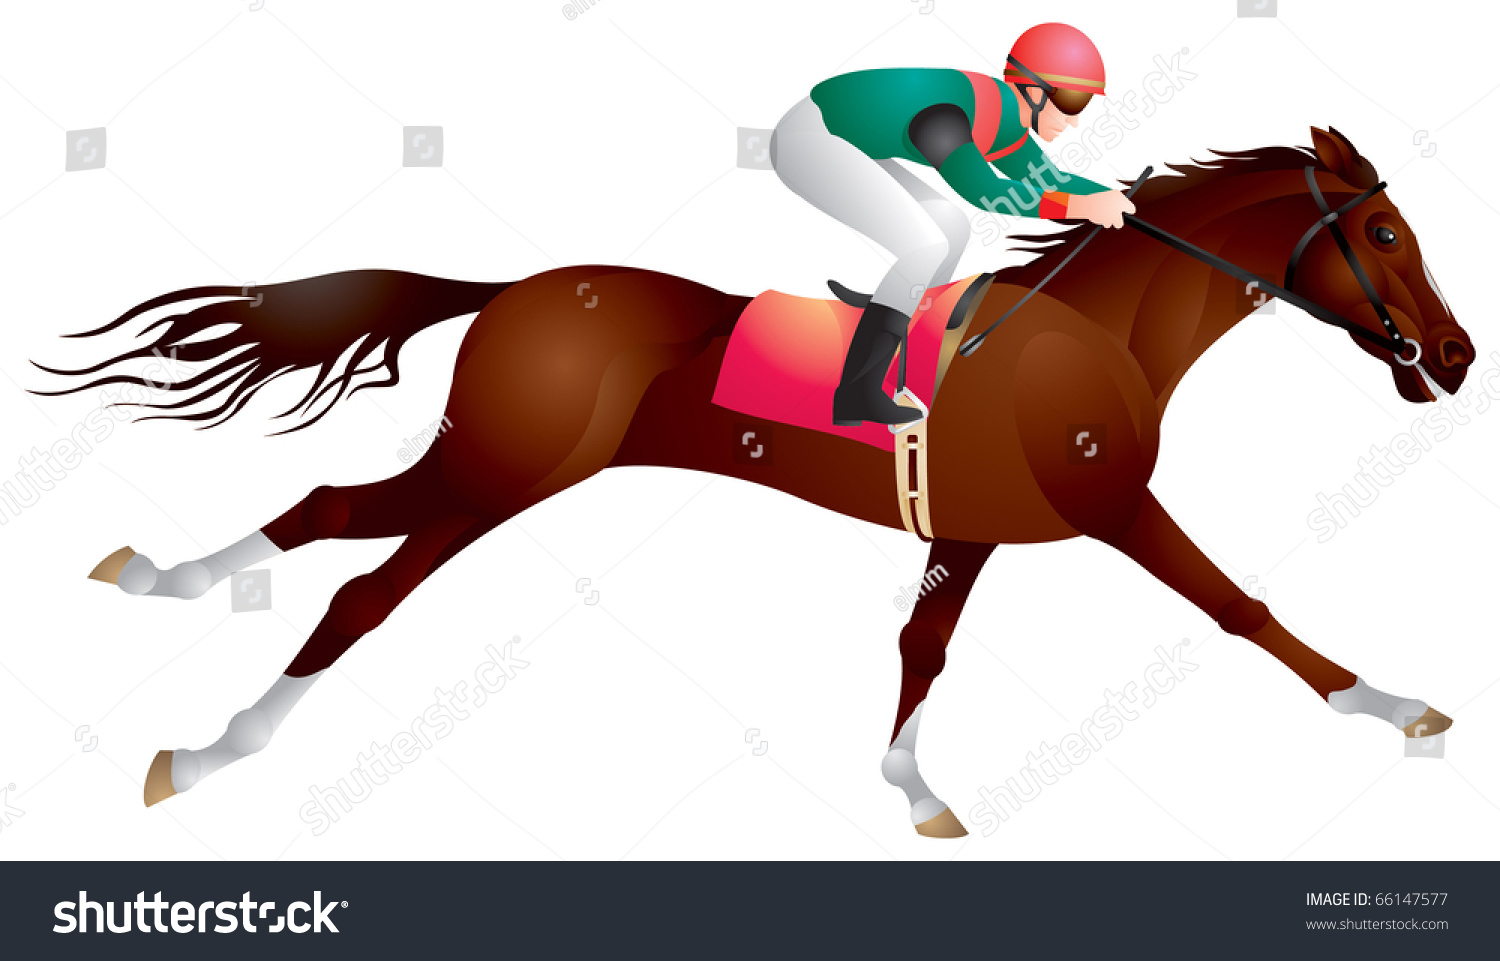 clipart horse and jockey - photo #47